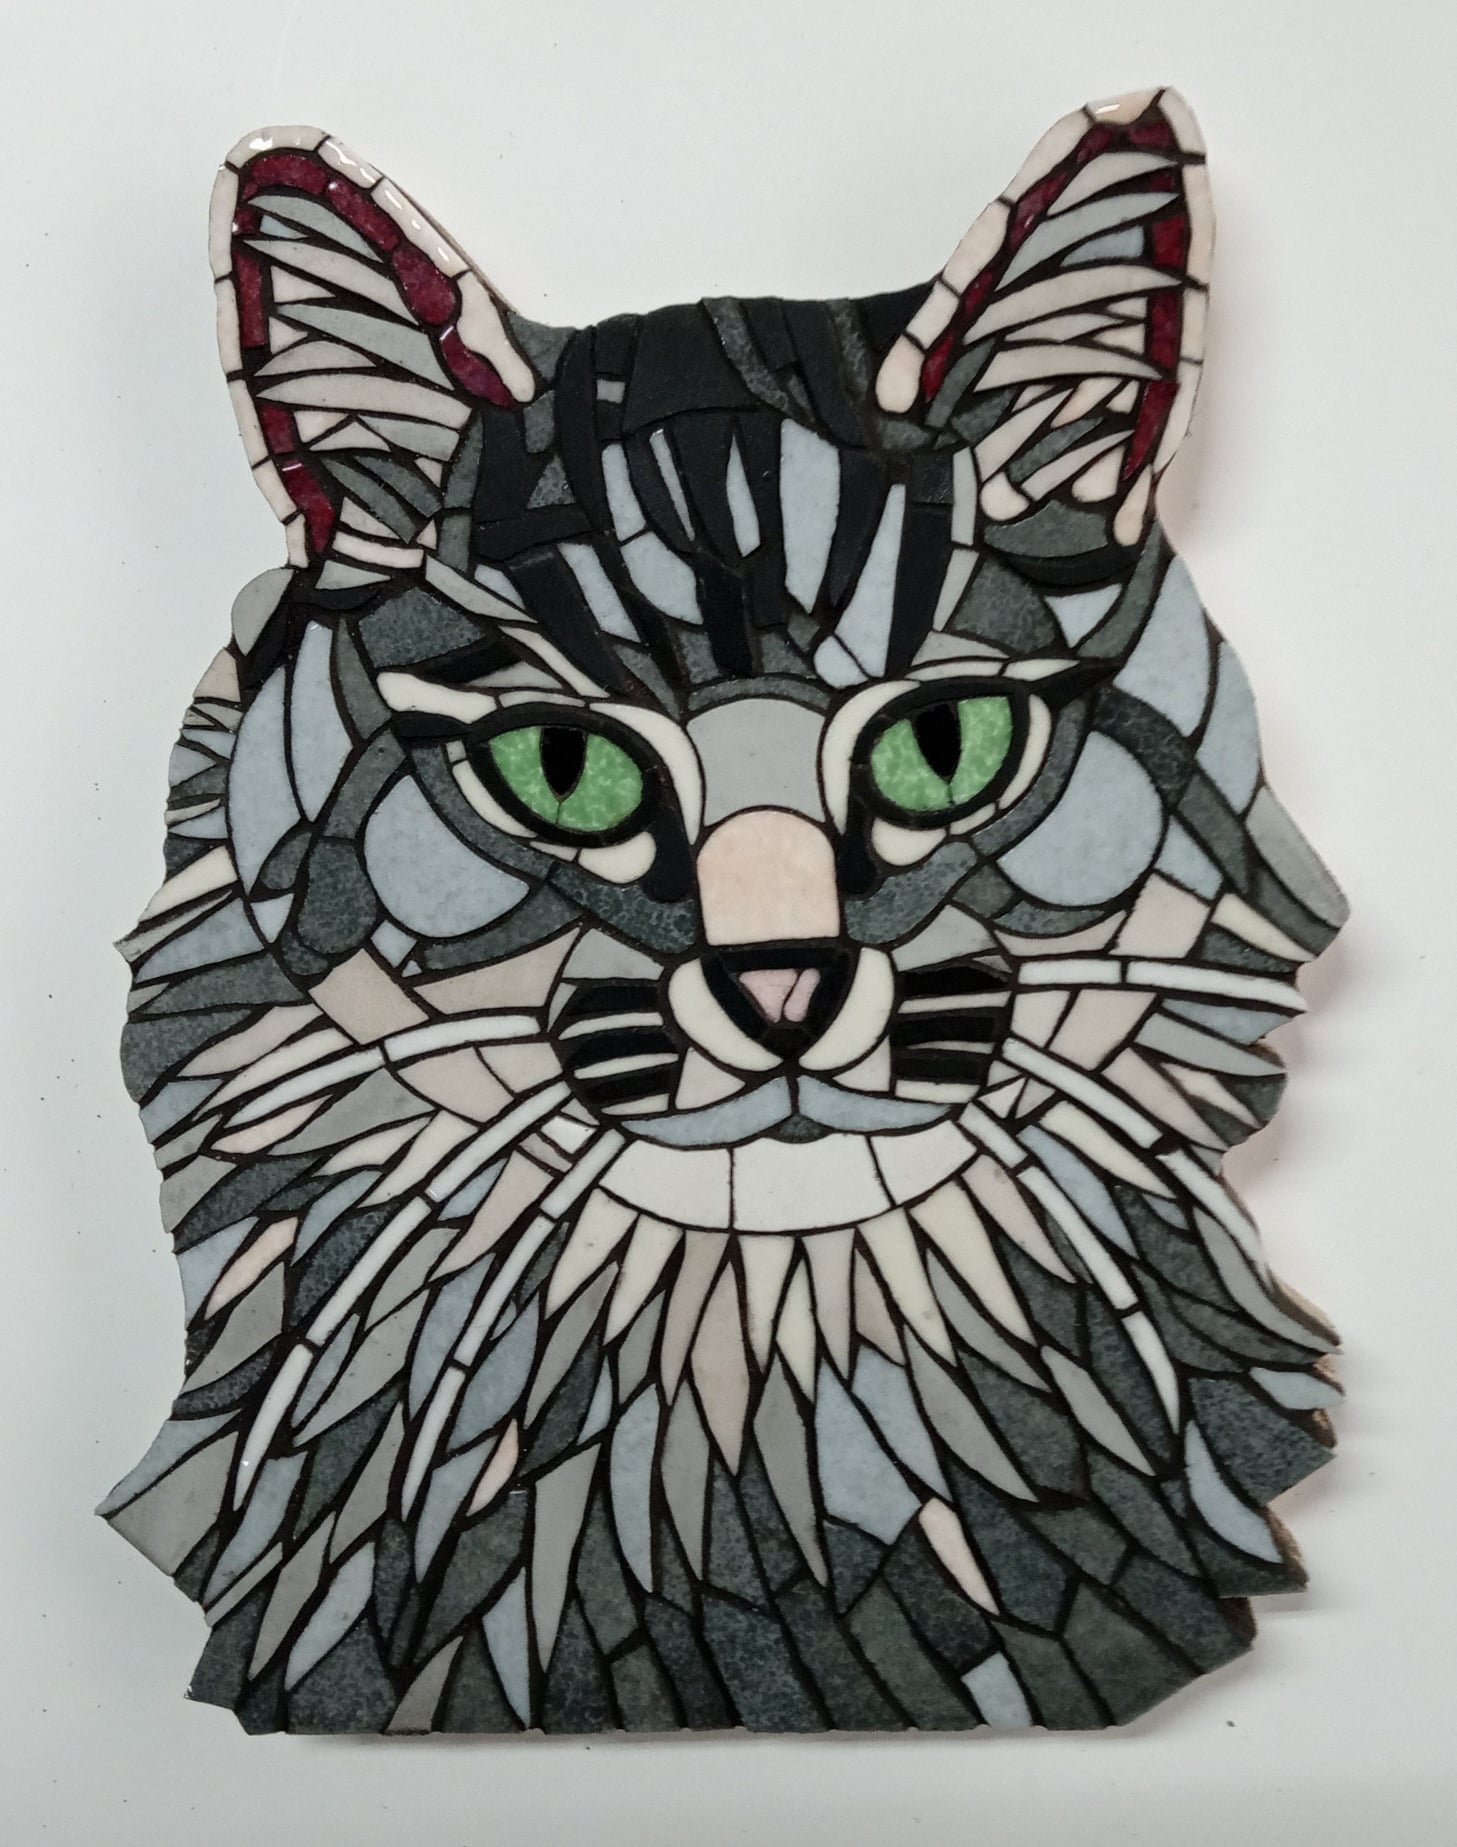 Mozaiek van een kat in opdracht gemaakt als verjaardagscadeau.